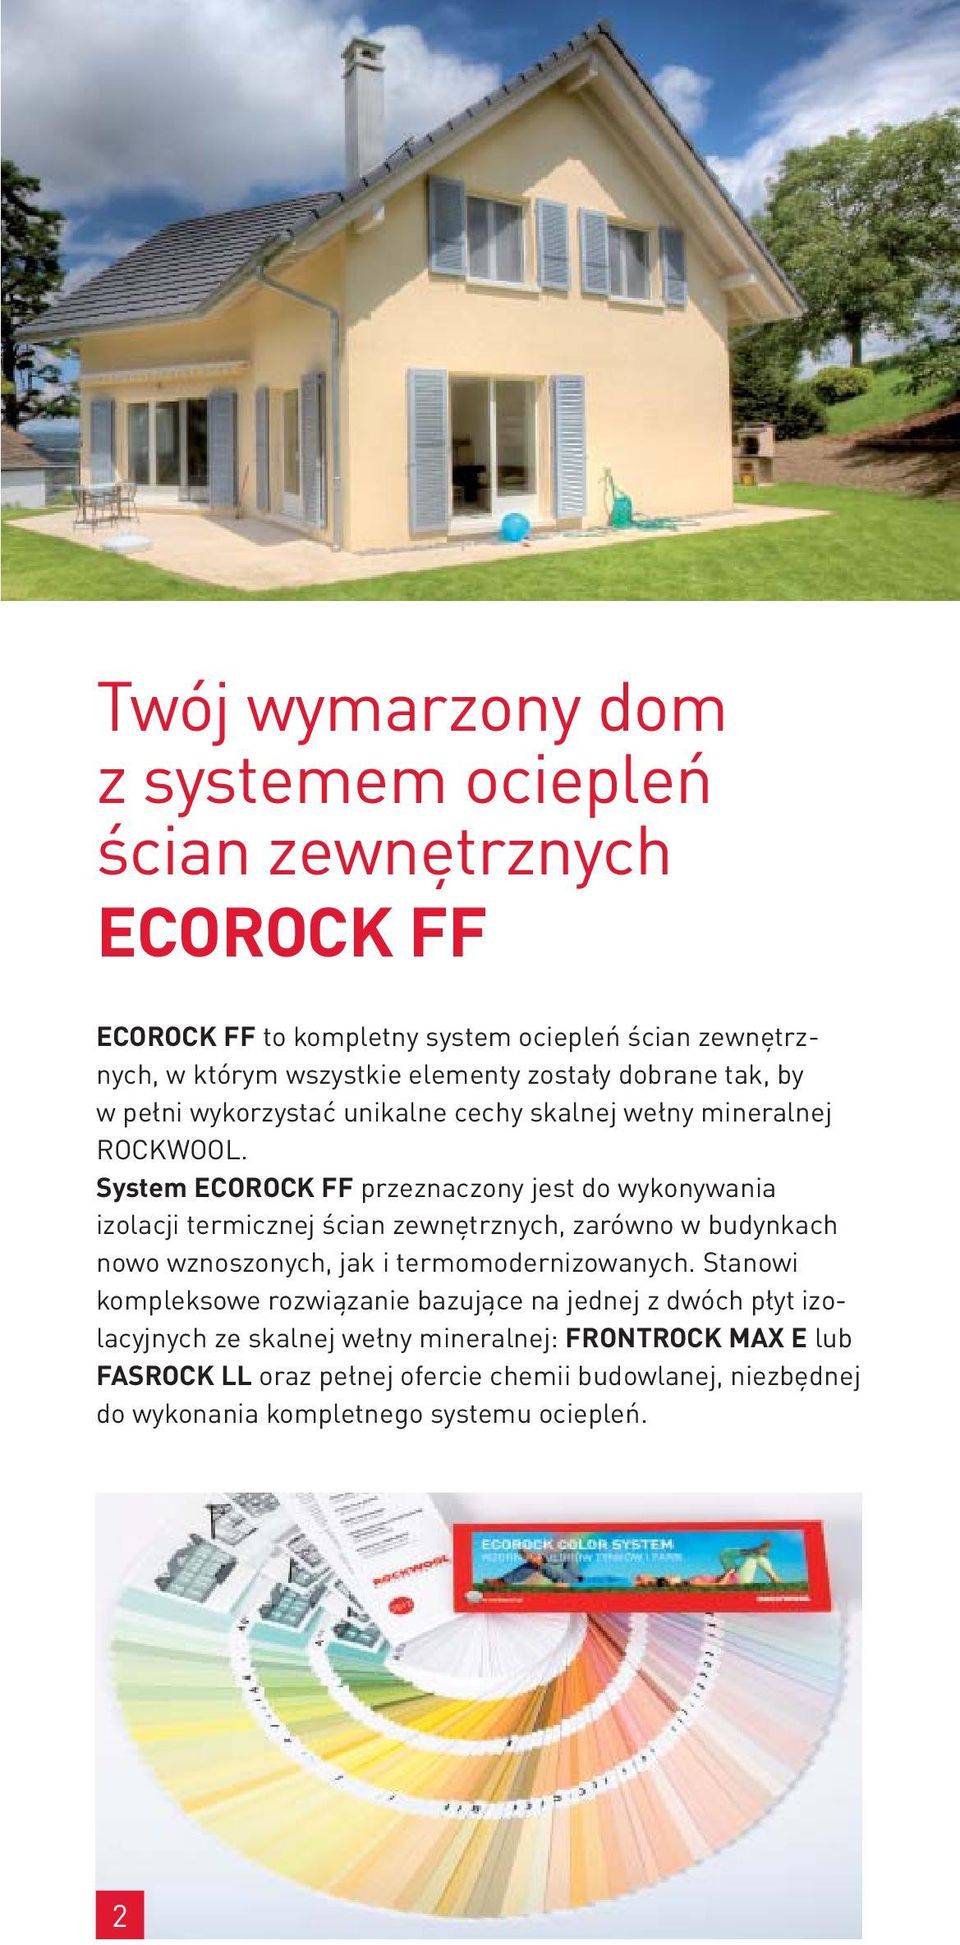 System ECOROCK FF przeznaczony jest do wykonywania izolacji termicznej ścian zewnętrznych, zarówno w budynkach nowo wznoszonych, jak i termomodernizowanych.